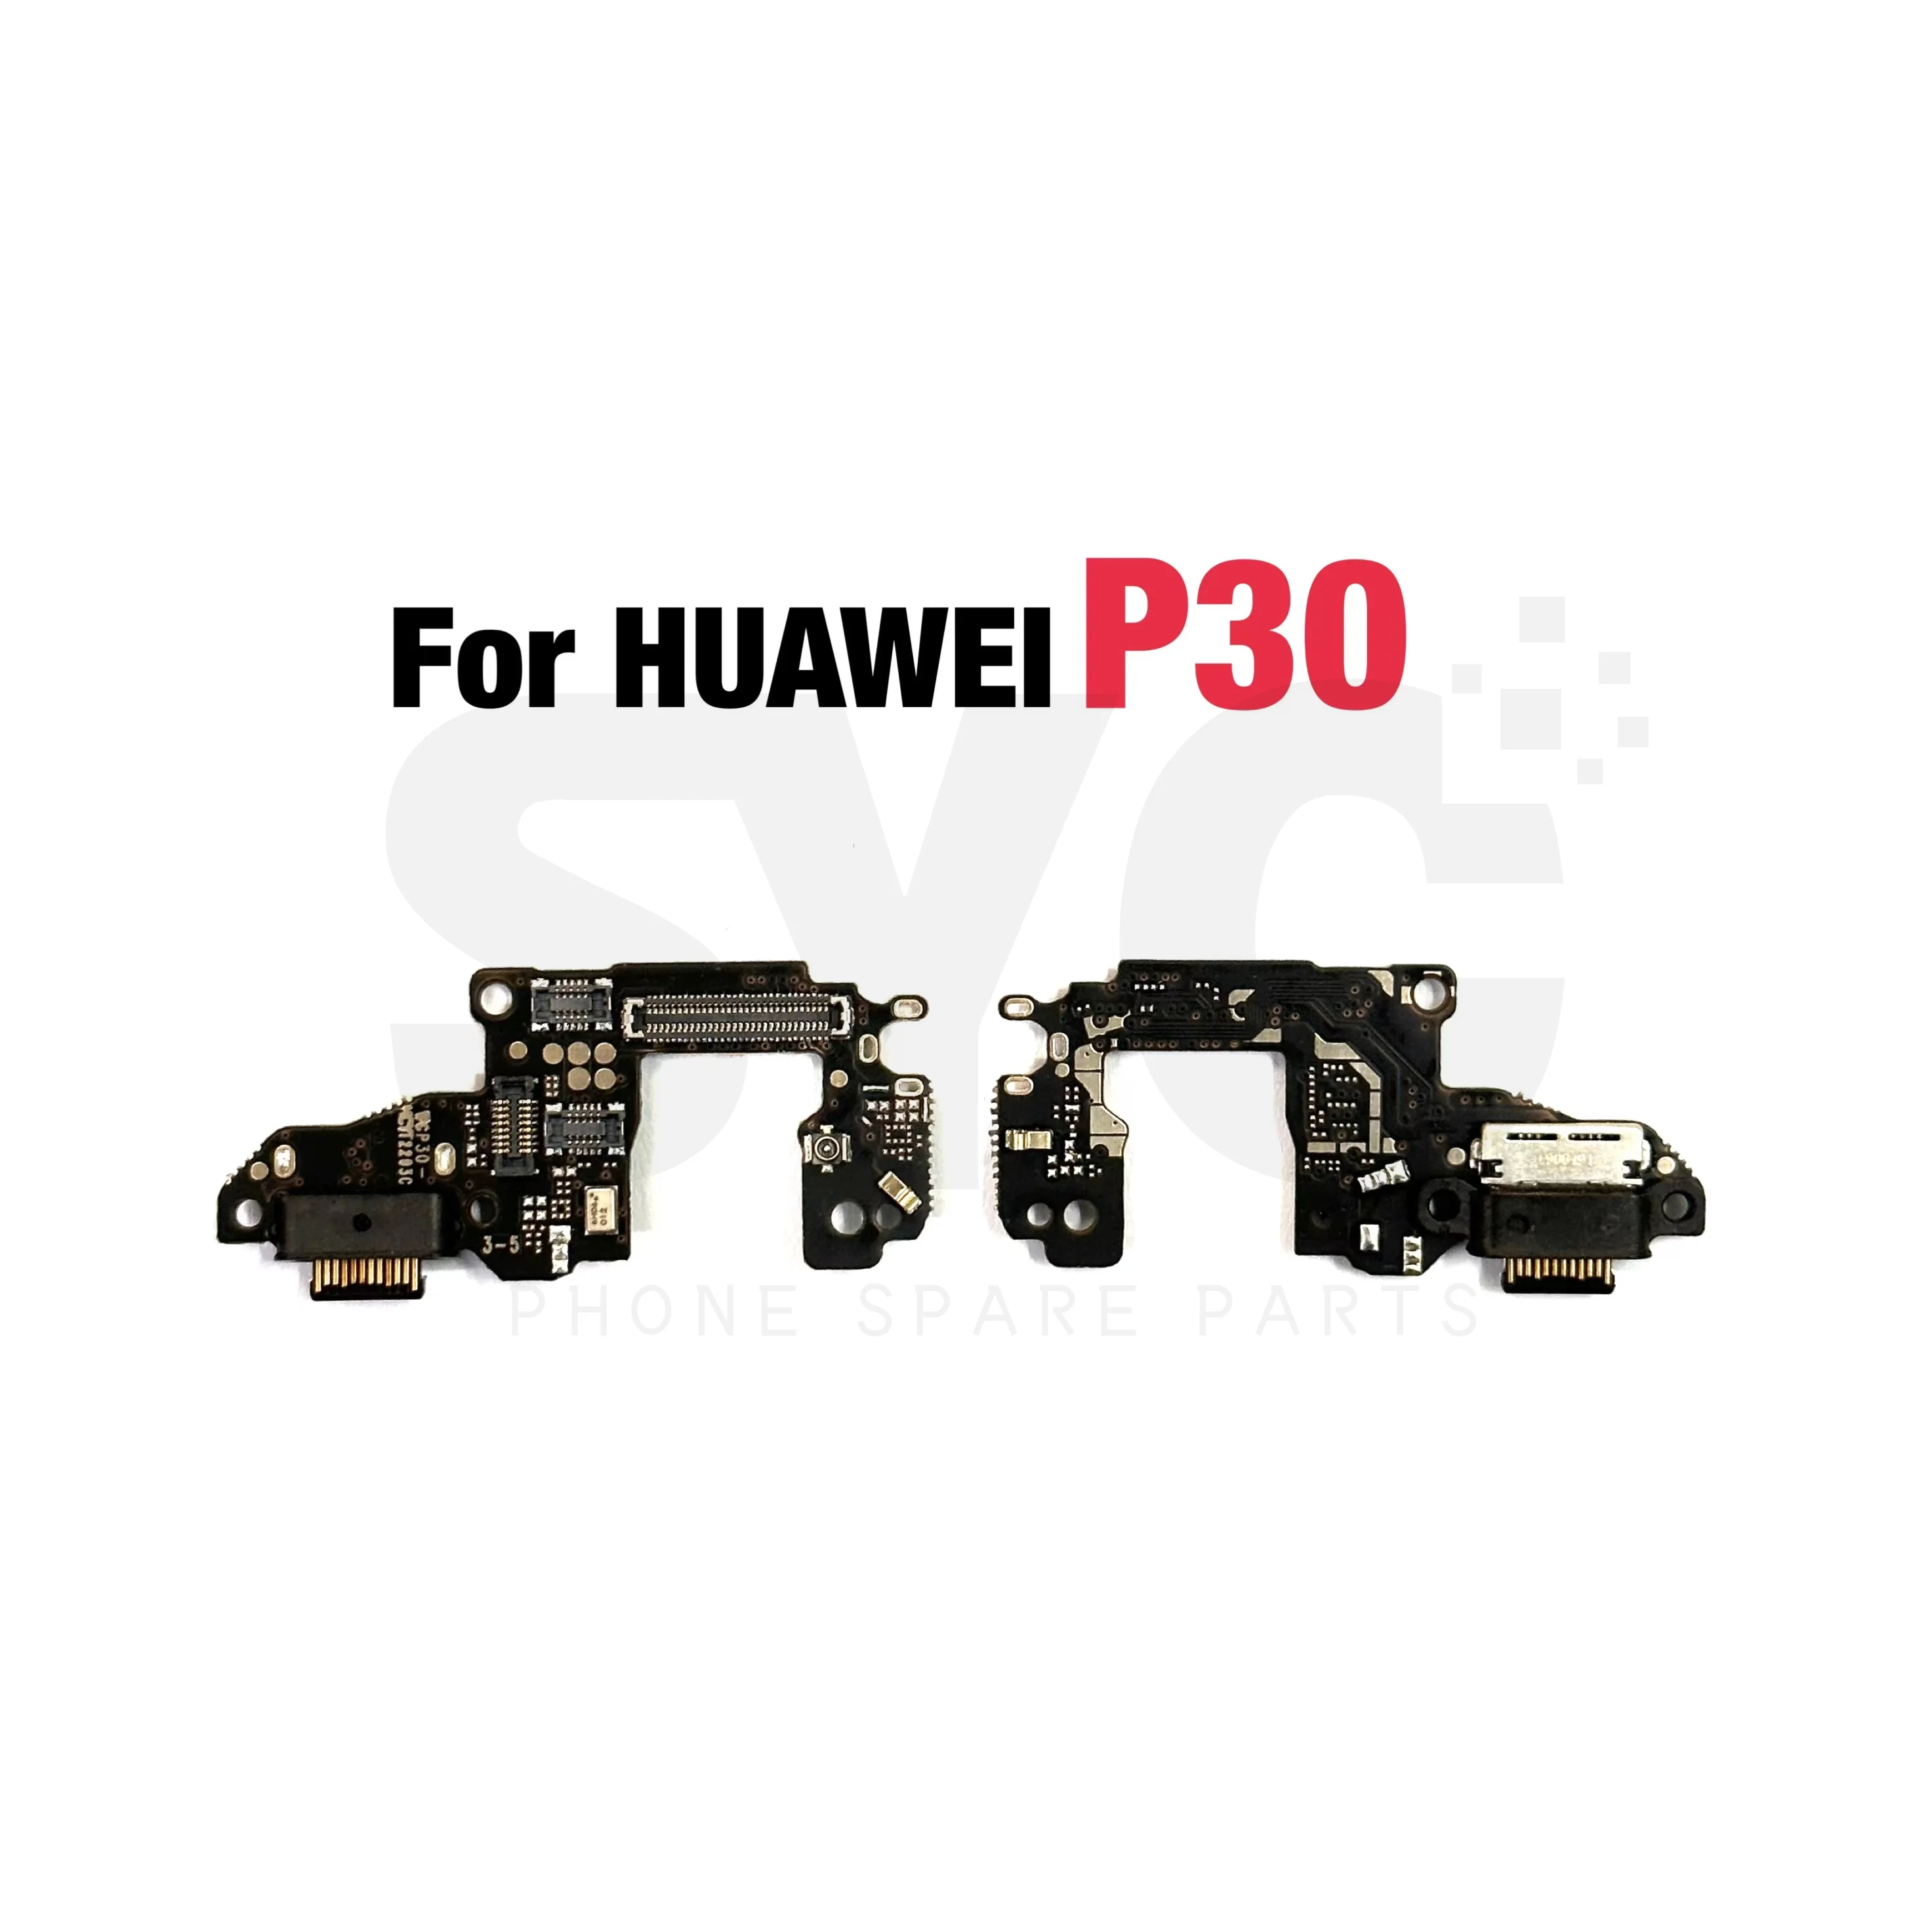 10 бр./лот Нова Зареждане чрез USB За Huawei P20 P30 P40 Lite P20 Pro P30 P40 Pro Зарядно Устройство, Порт за Докинг станция Гъвкав Кабел